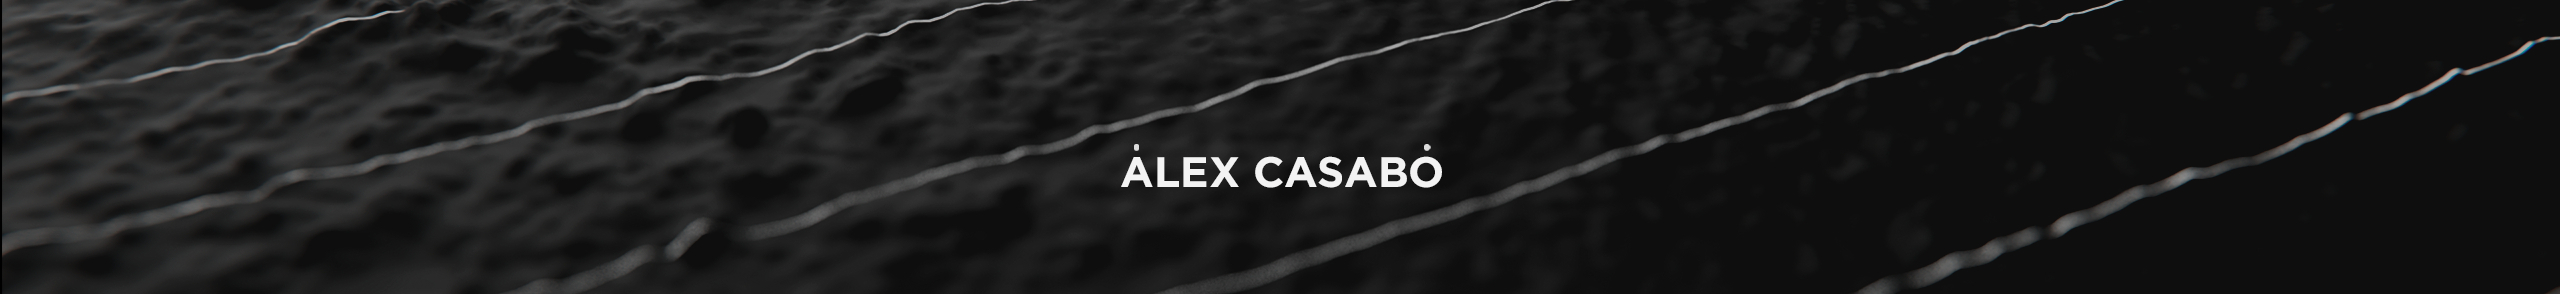 Alex Casabò's profile banner